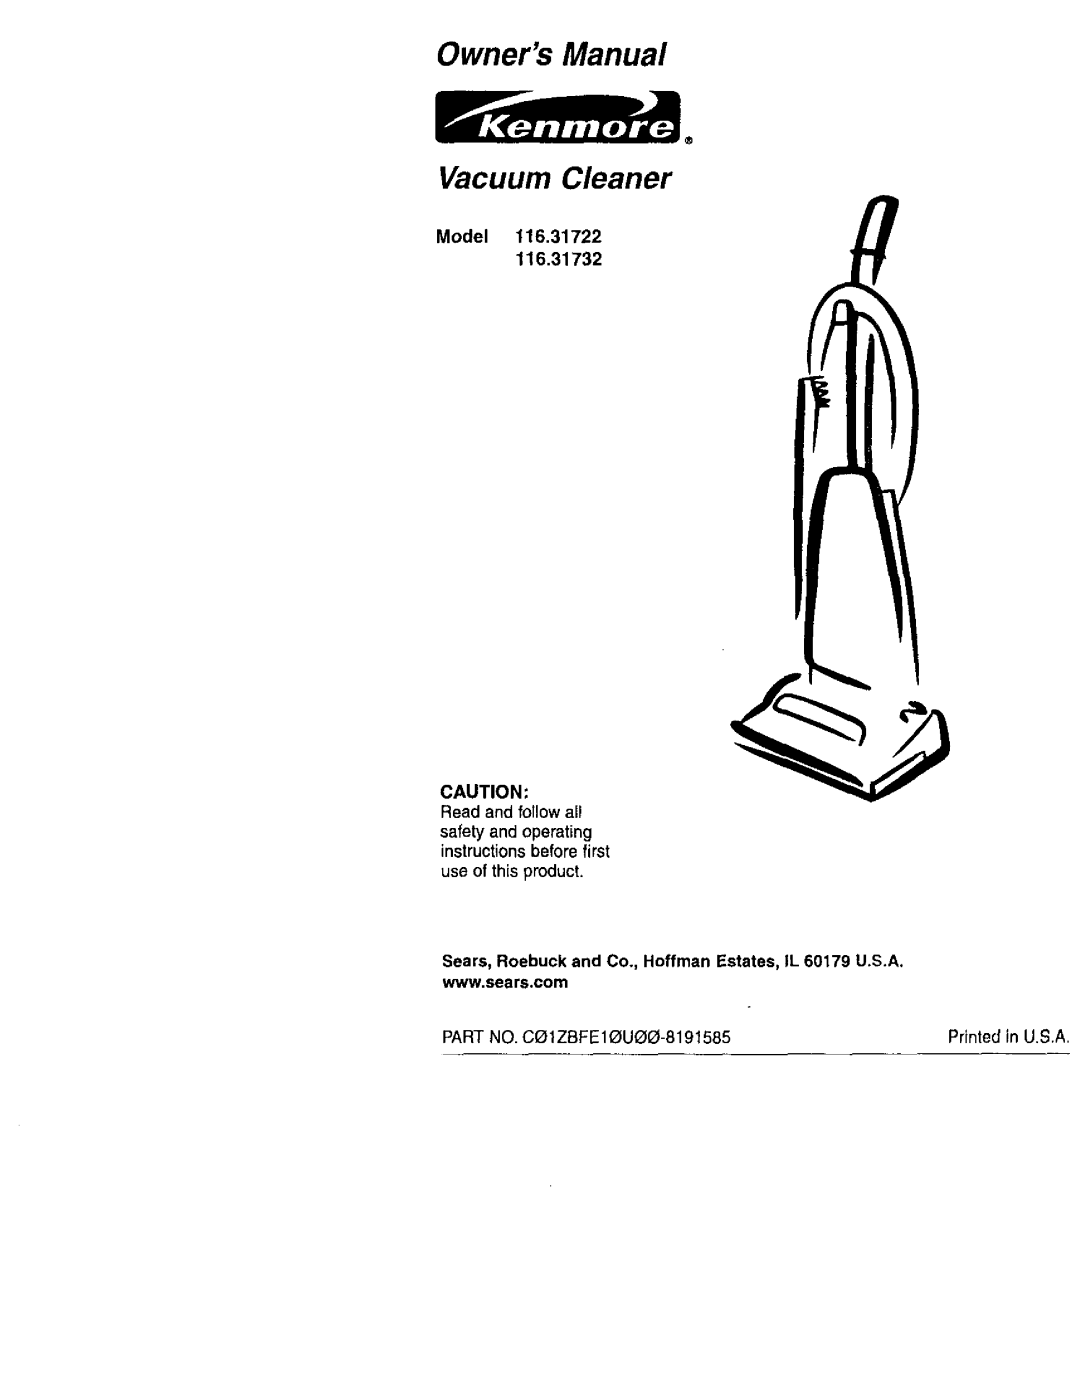 Kenmore 116.31732, 116.31722 owner manual Model, Vacuum Cleaner 